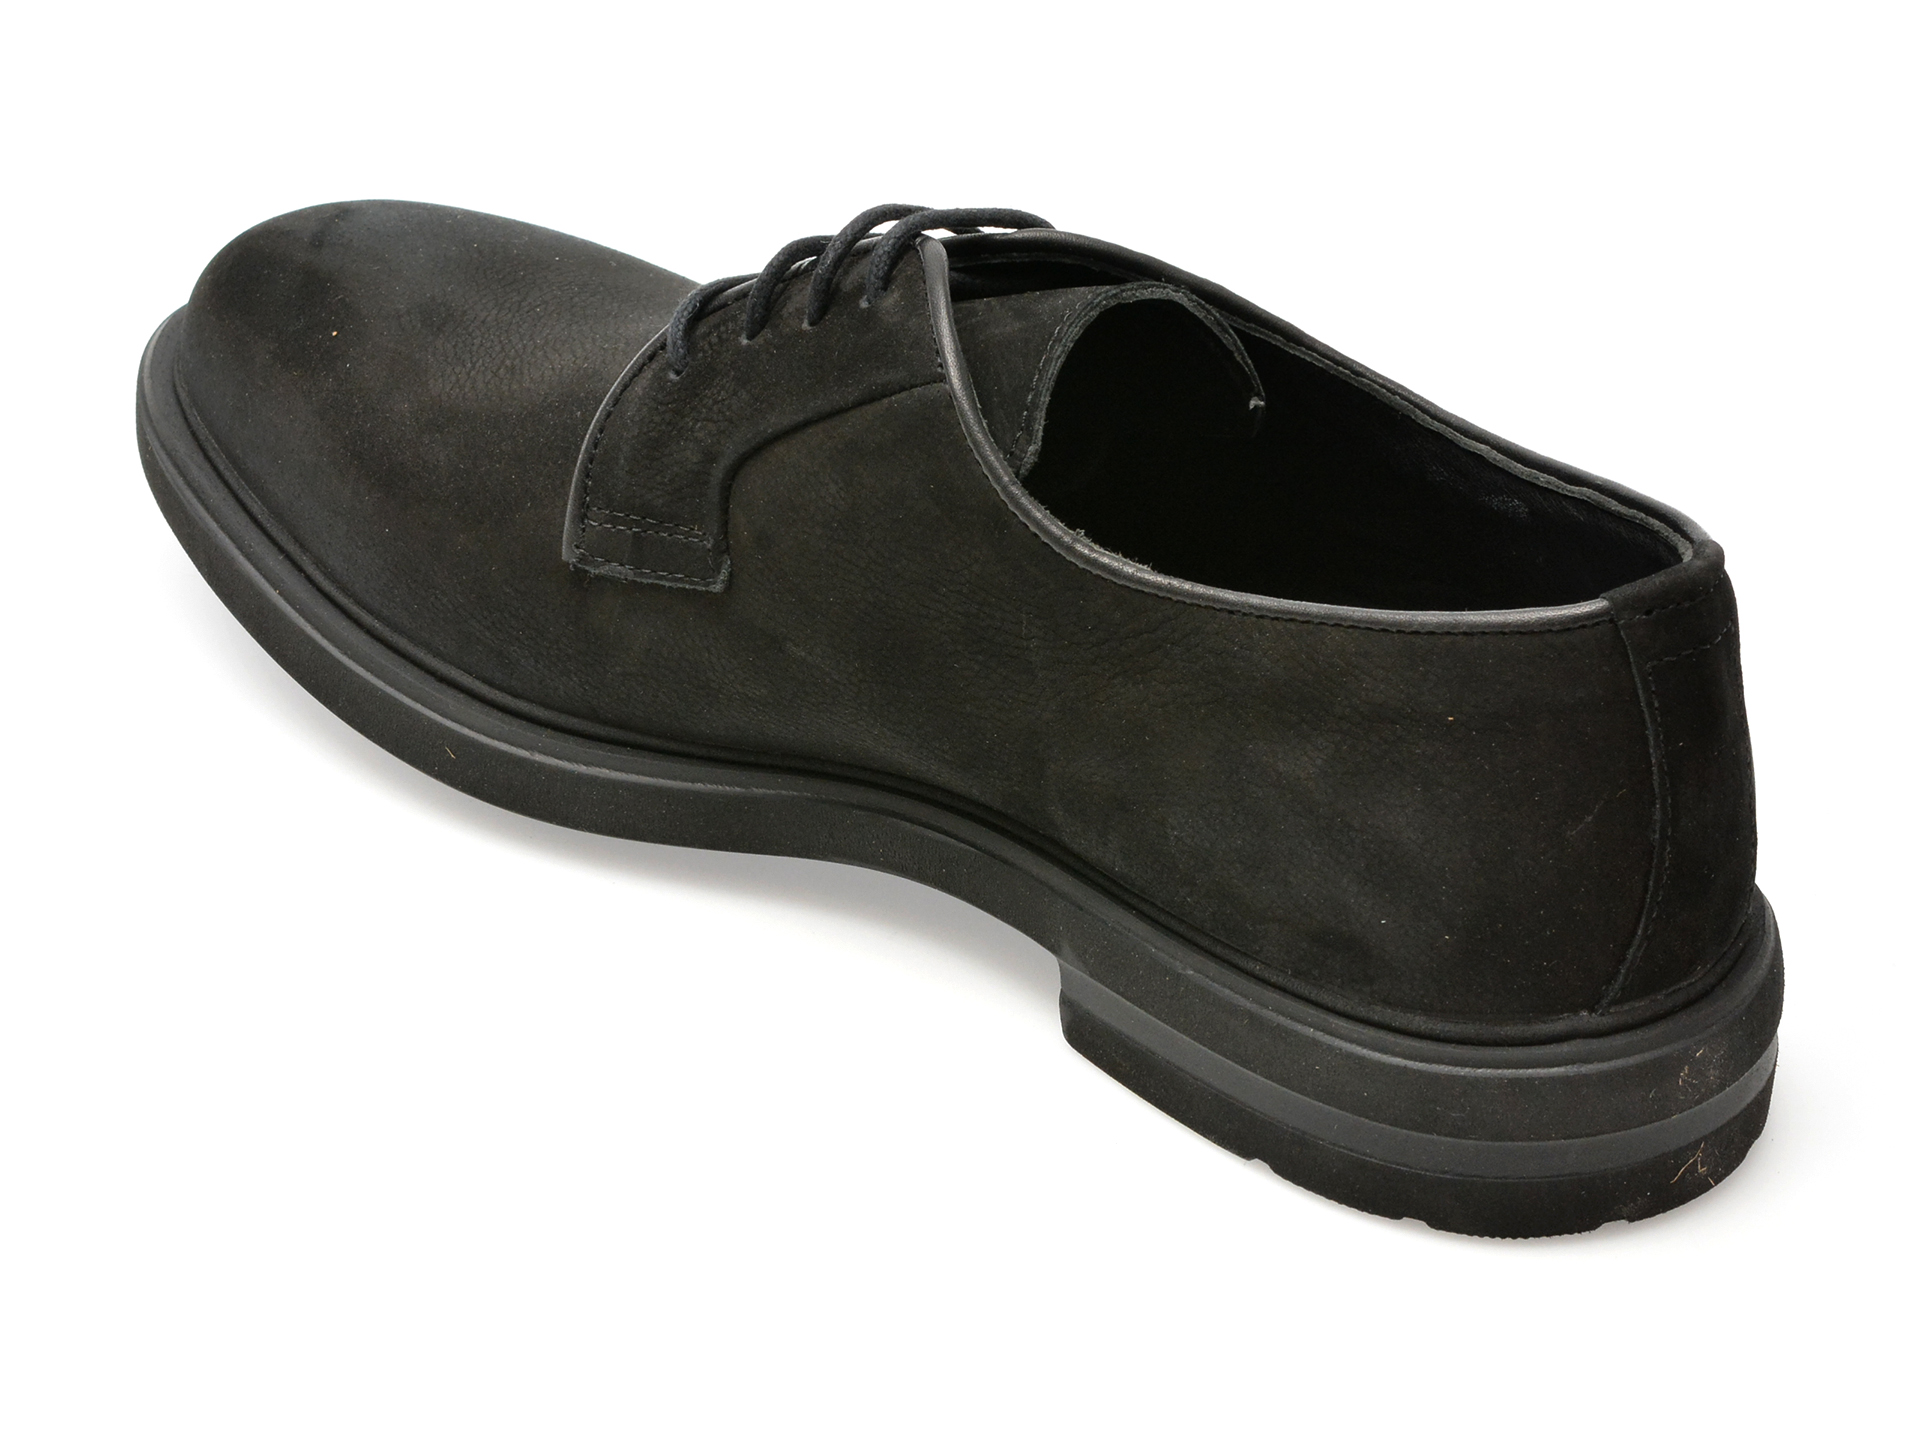 Poze Pantofi OTTER negri, E1801, din nabuc Otter